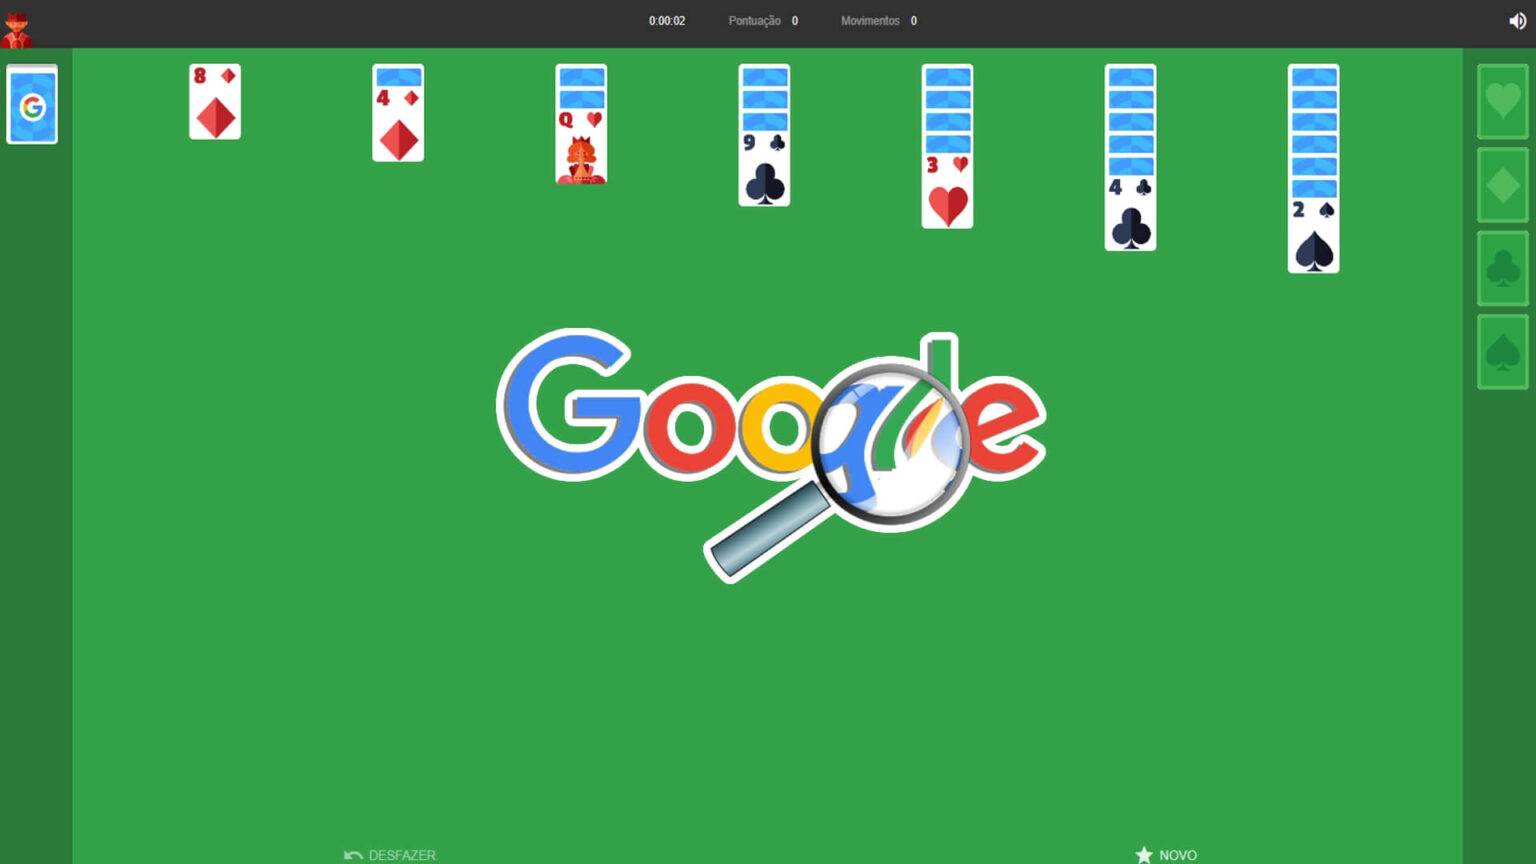 Conheça 25 jogos do Google escondidos para jogar - KSensei